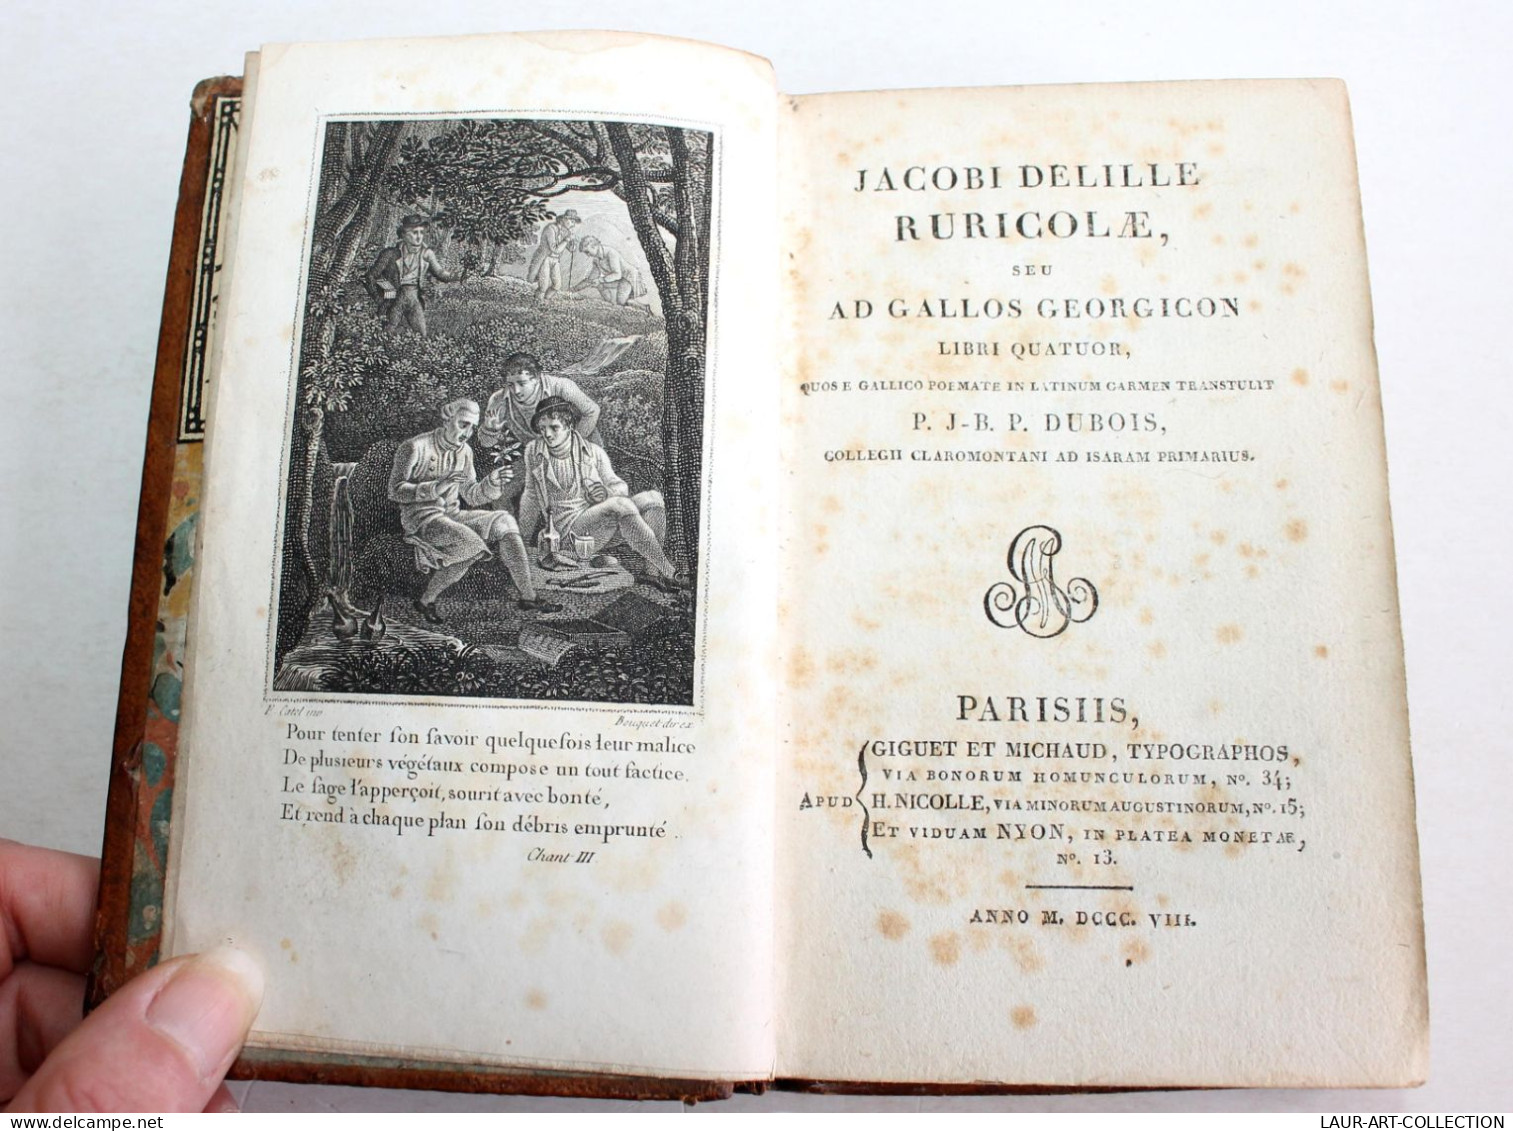 HOMME DES CHAMPS GEORGIQUES FRANCAISES De DELILLE, DUBOIS POEME CHANT 1808 LATIN / ANCIEN LIVRE XIXe SIECLE (1803.155) - Auteurs Français